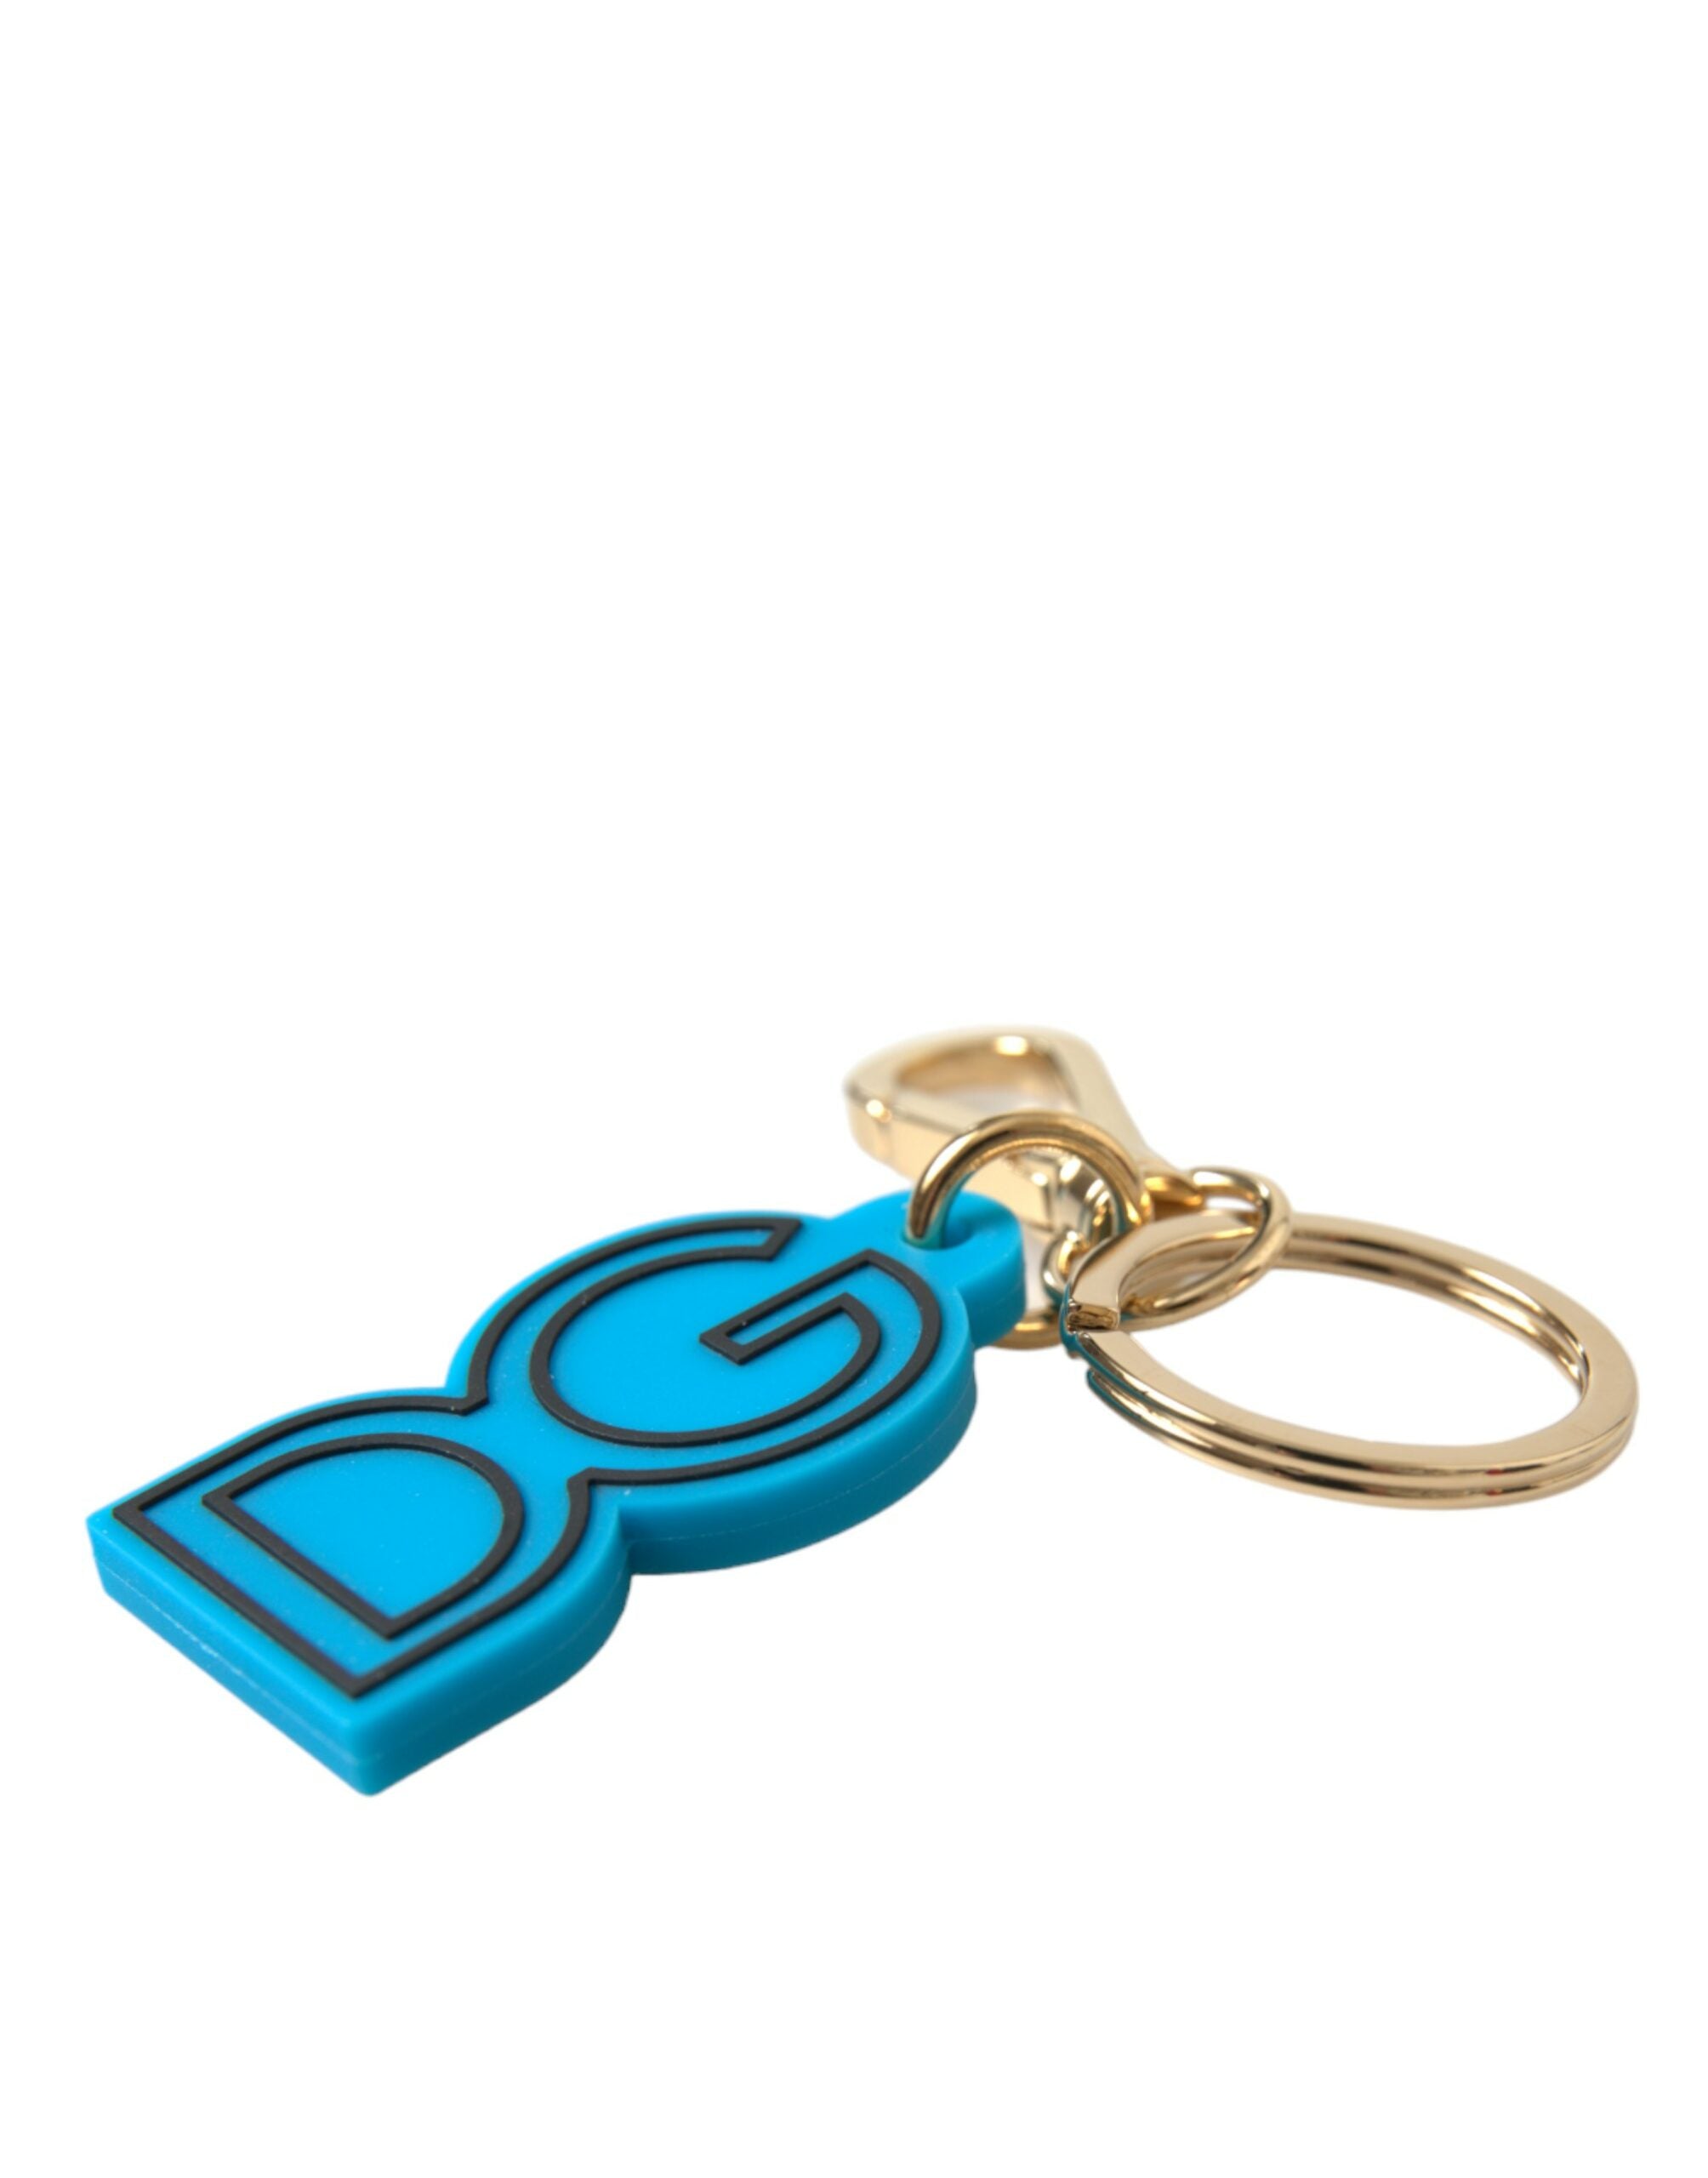 Dolce & Gabbana Elegantes Schlüsselanhänger-Accessoire in Blau und Gold